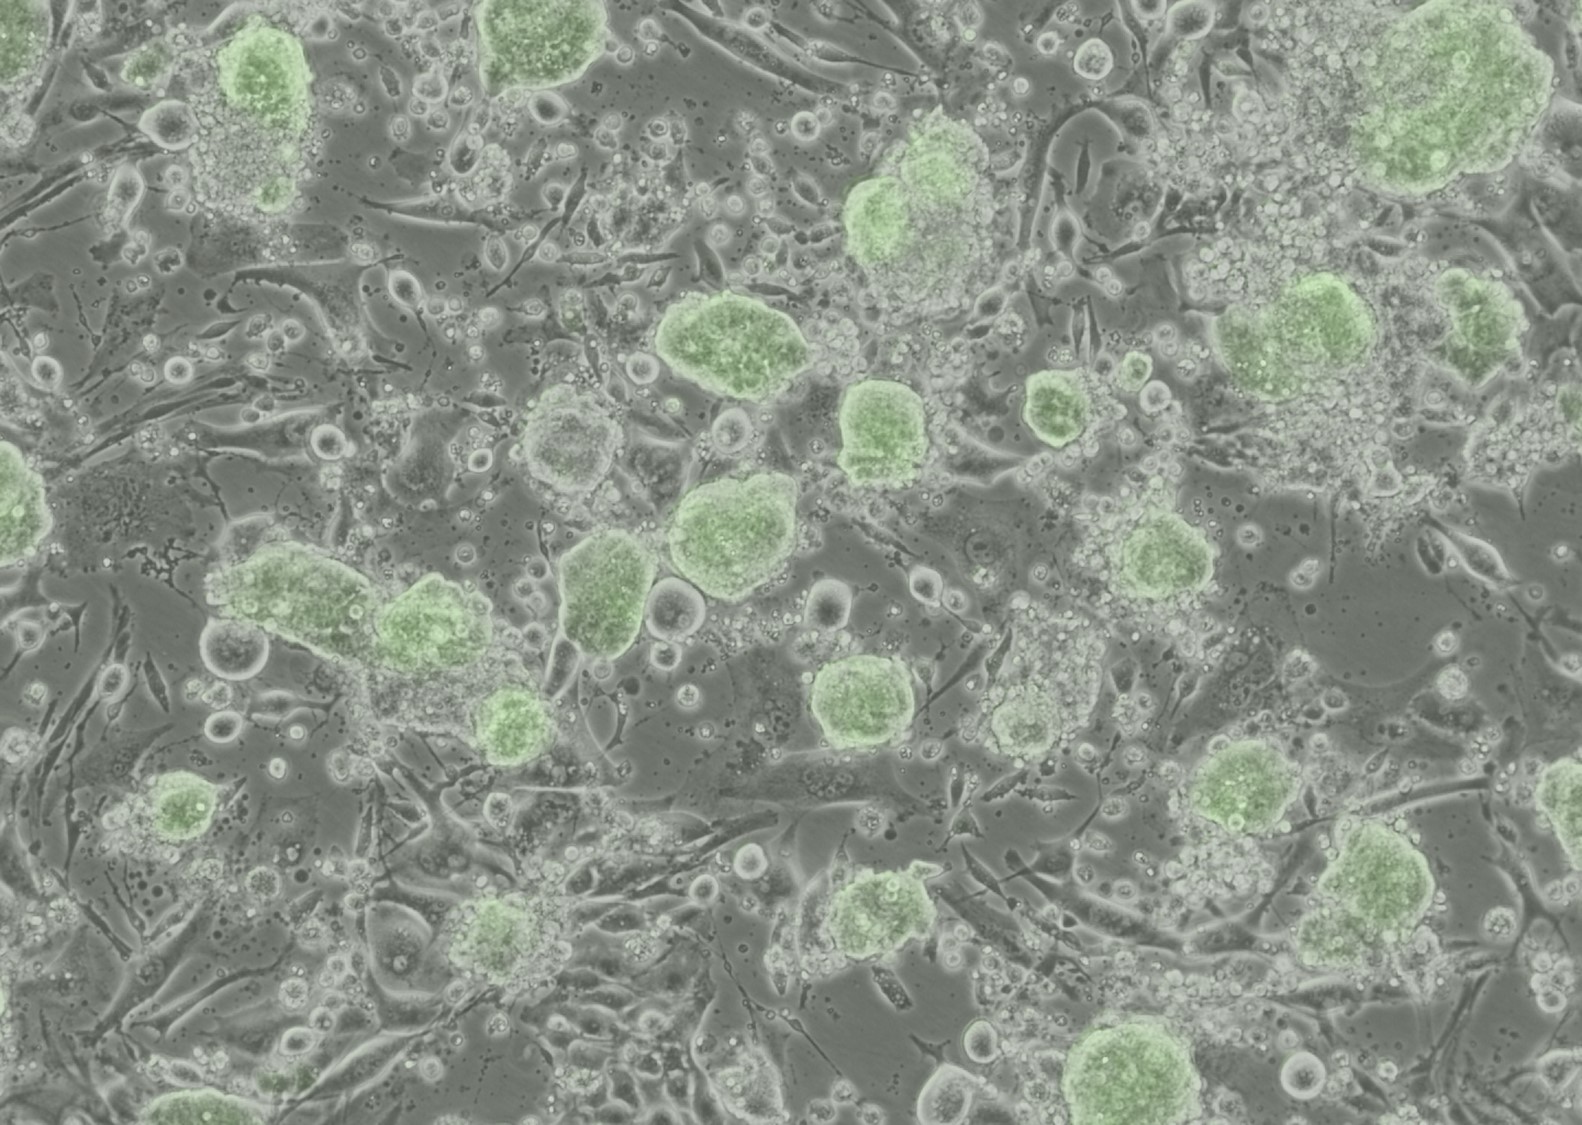 幹細胞科研取得突破性發展，為胚胎發育、再生醫學、生物科技及農業研究開拓新路程，圖中綠色部分為Oct4表達的小鼠擴展潛能胚胎幹細胞